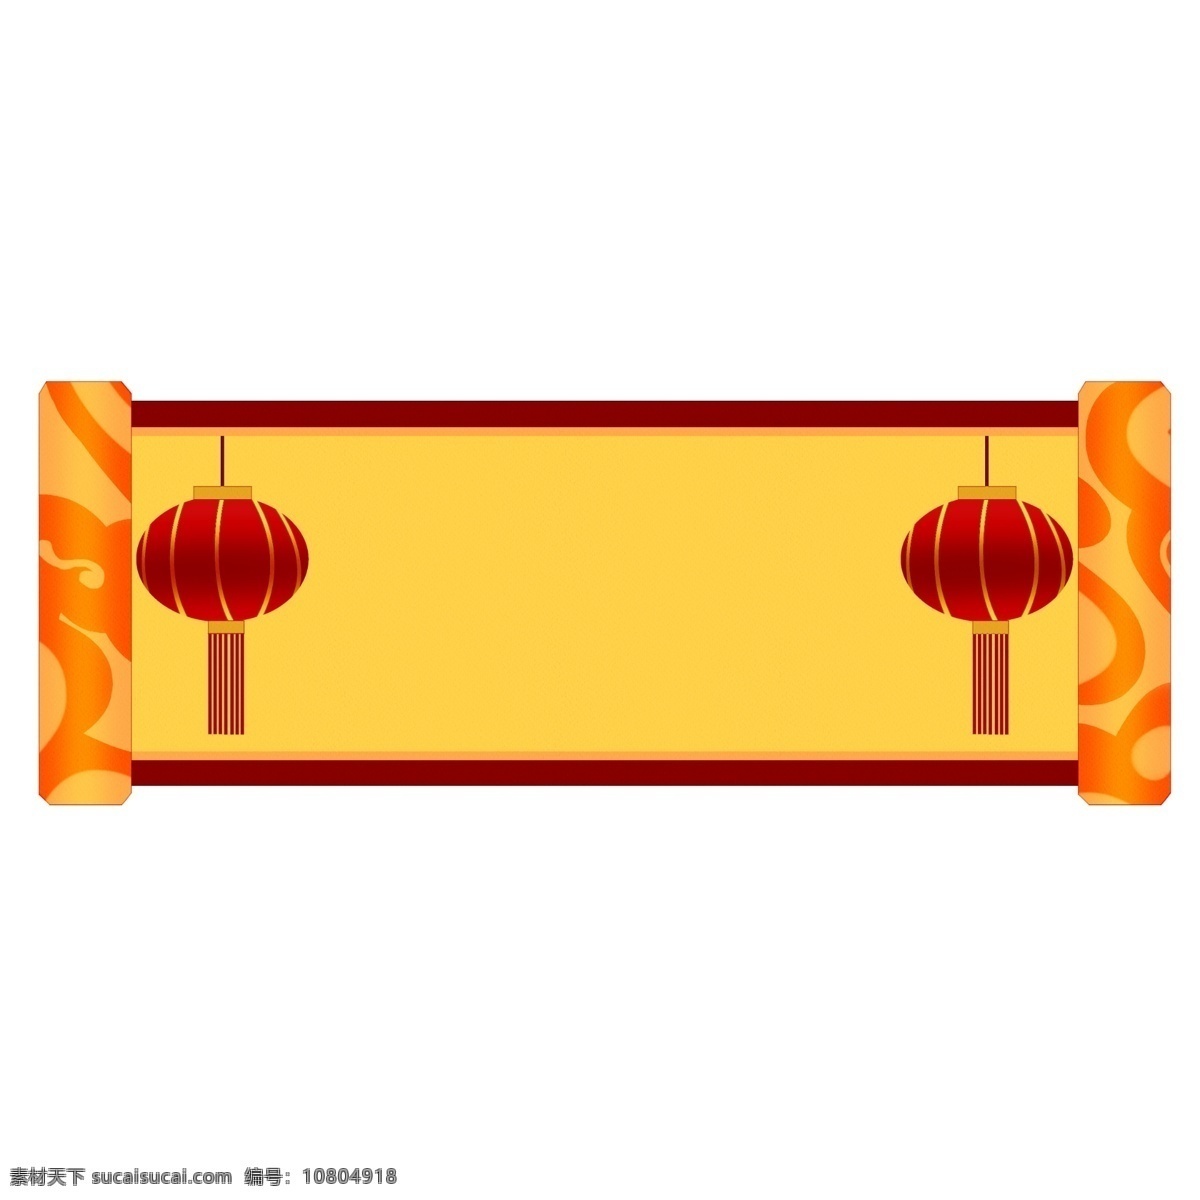 新年 红色 灯笼 边框 手绘卷轴边框 新年边框 手绘边框 灯笼边框 边框纹理 中国风边框 红色灯笼边框